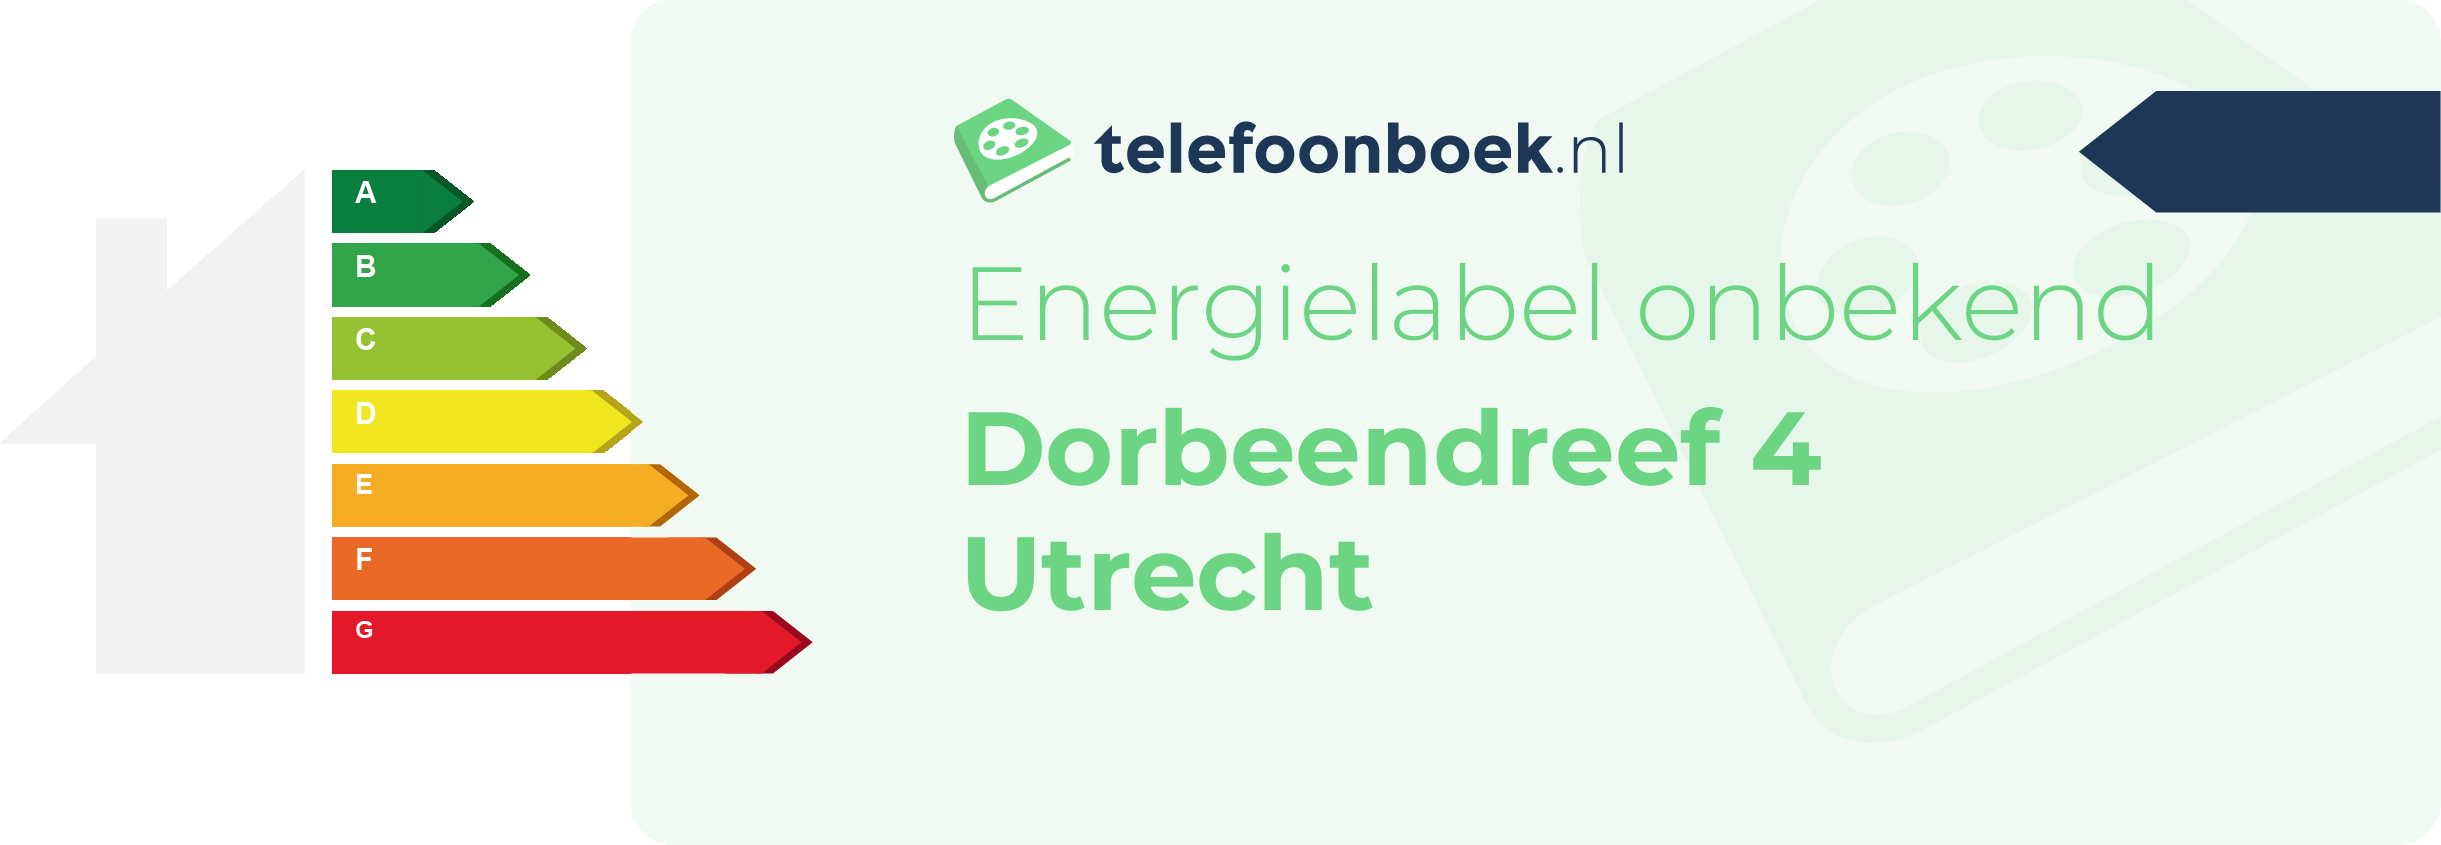 Energielabel Dorbeendreef 4 Utrecht